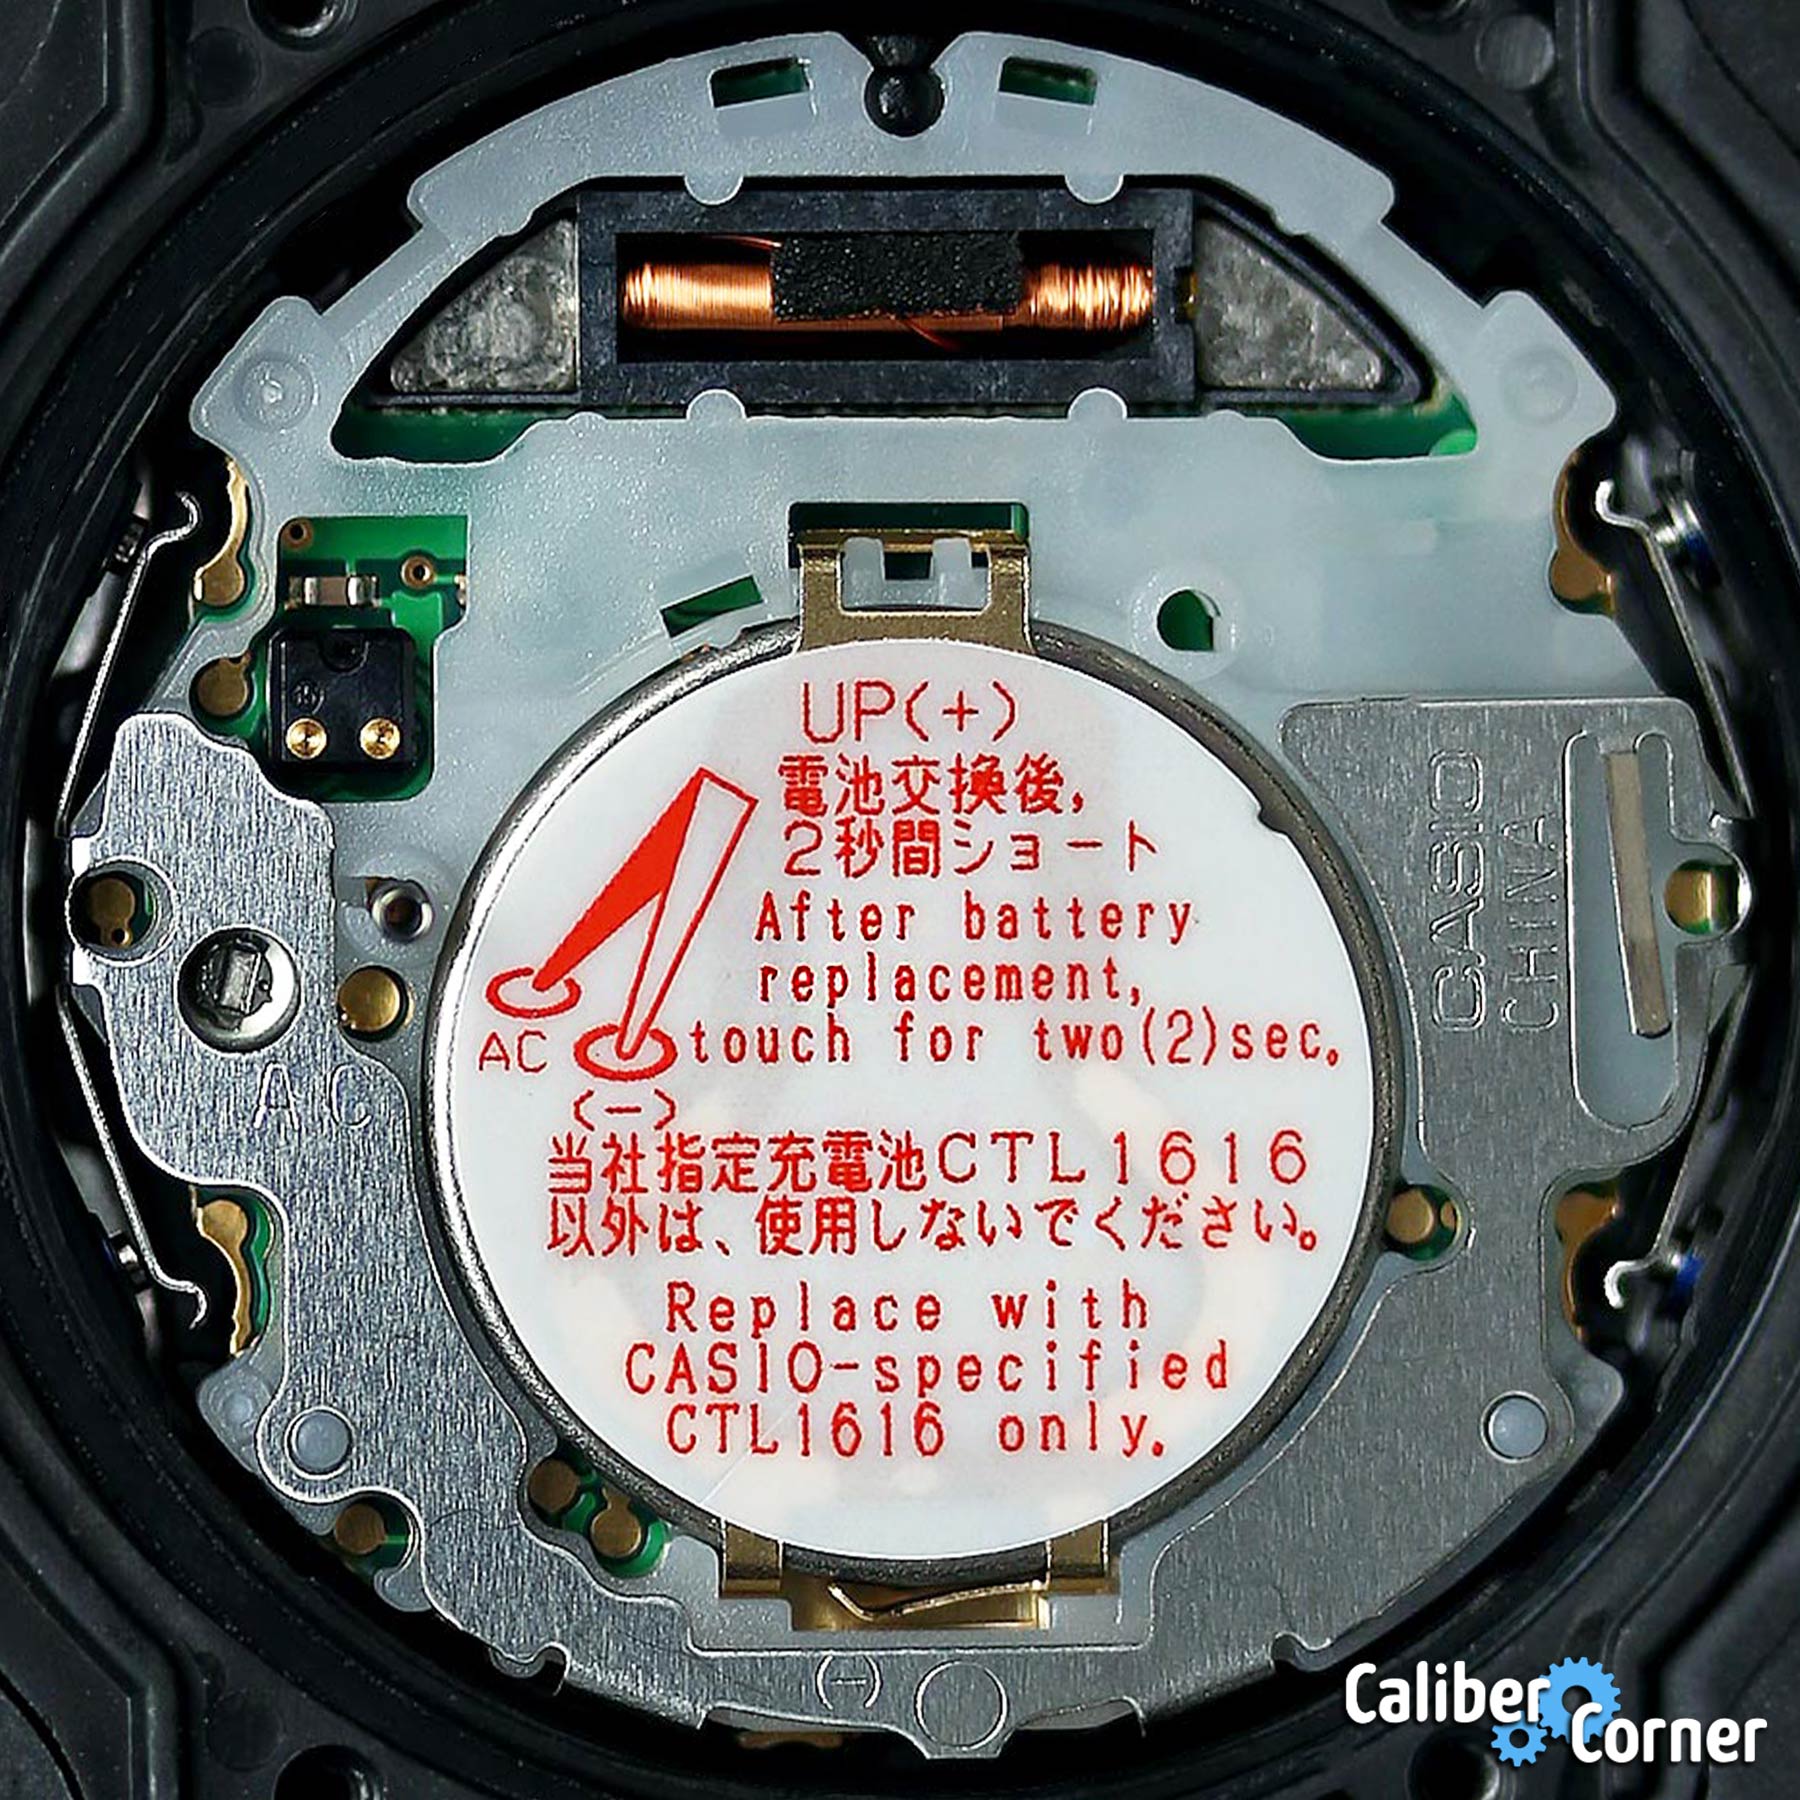 Casio G Shock Caliber 3159 Module